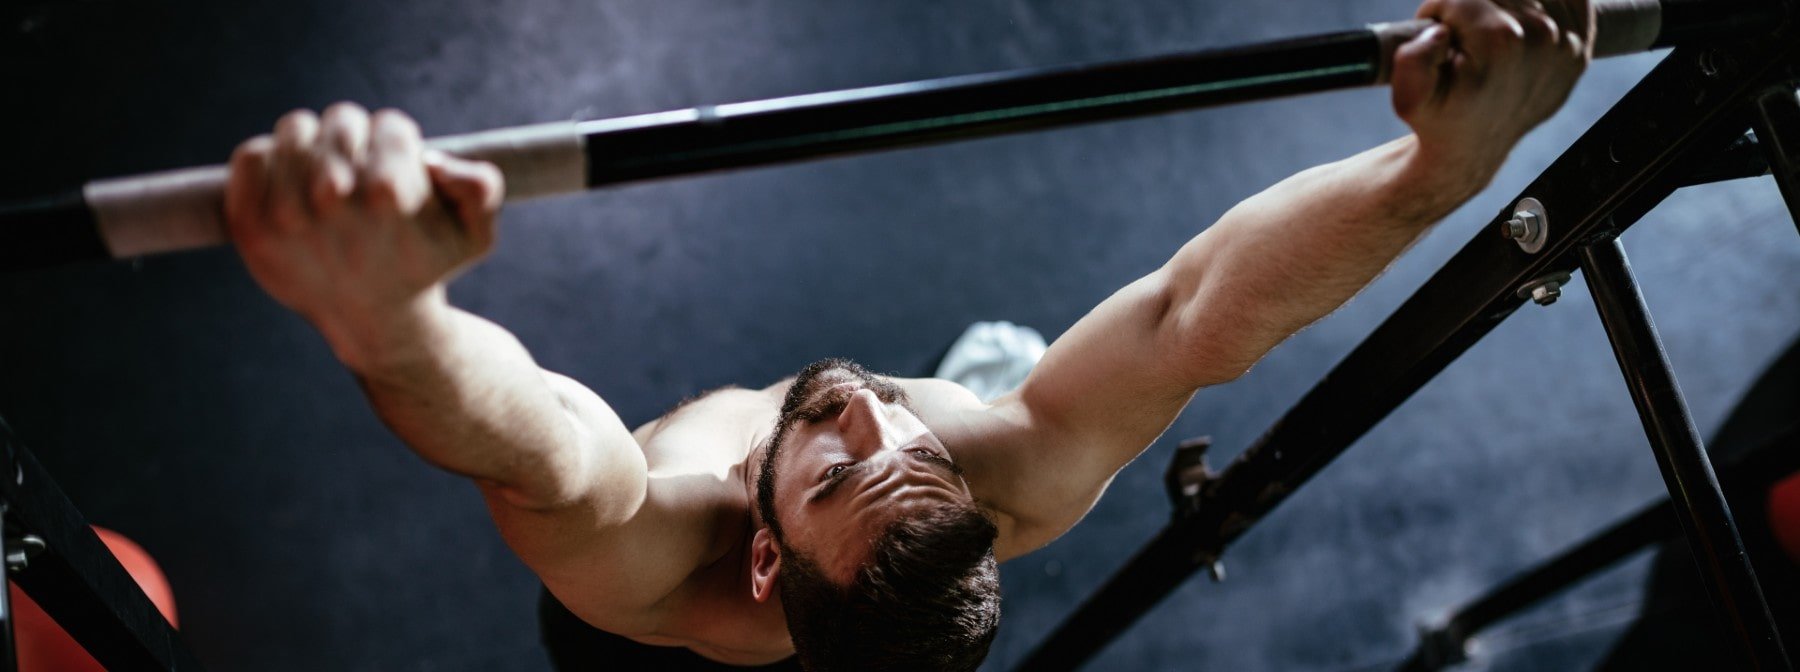 Cómo fortalecer los brazos con pesas - 6 pasos